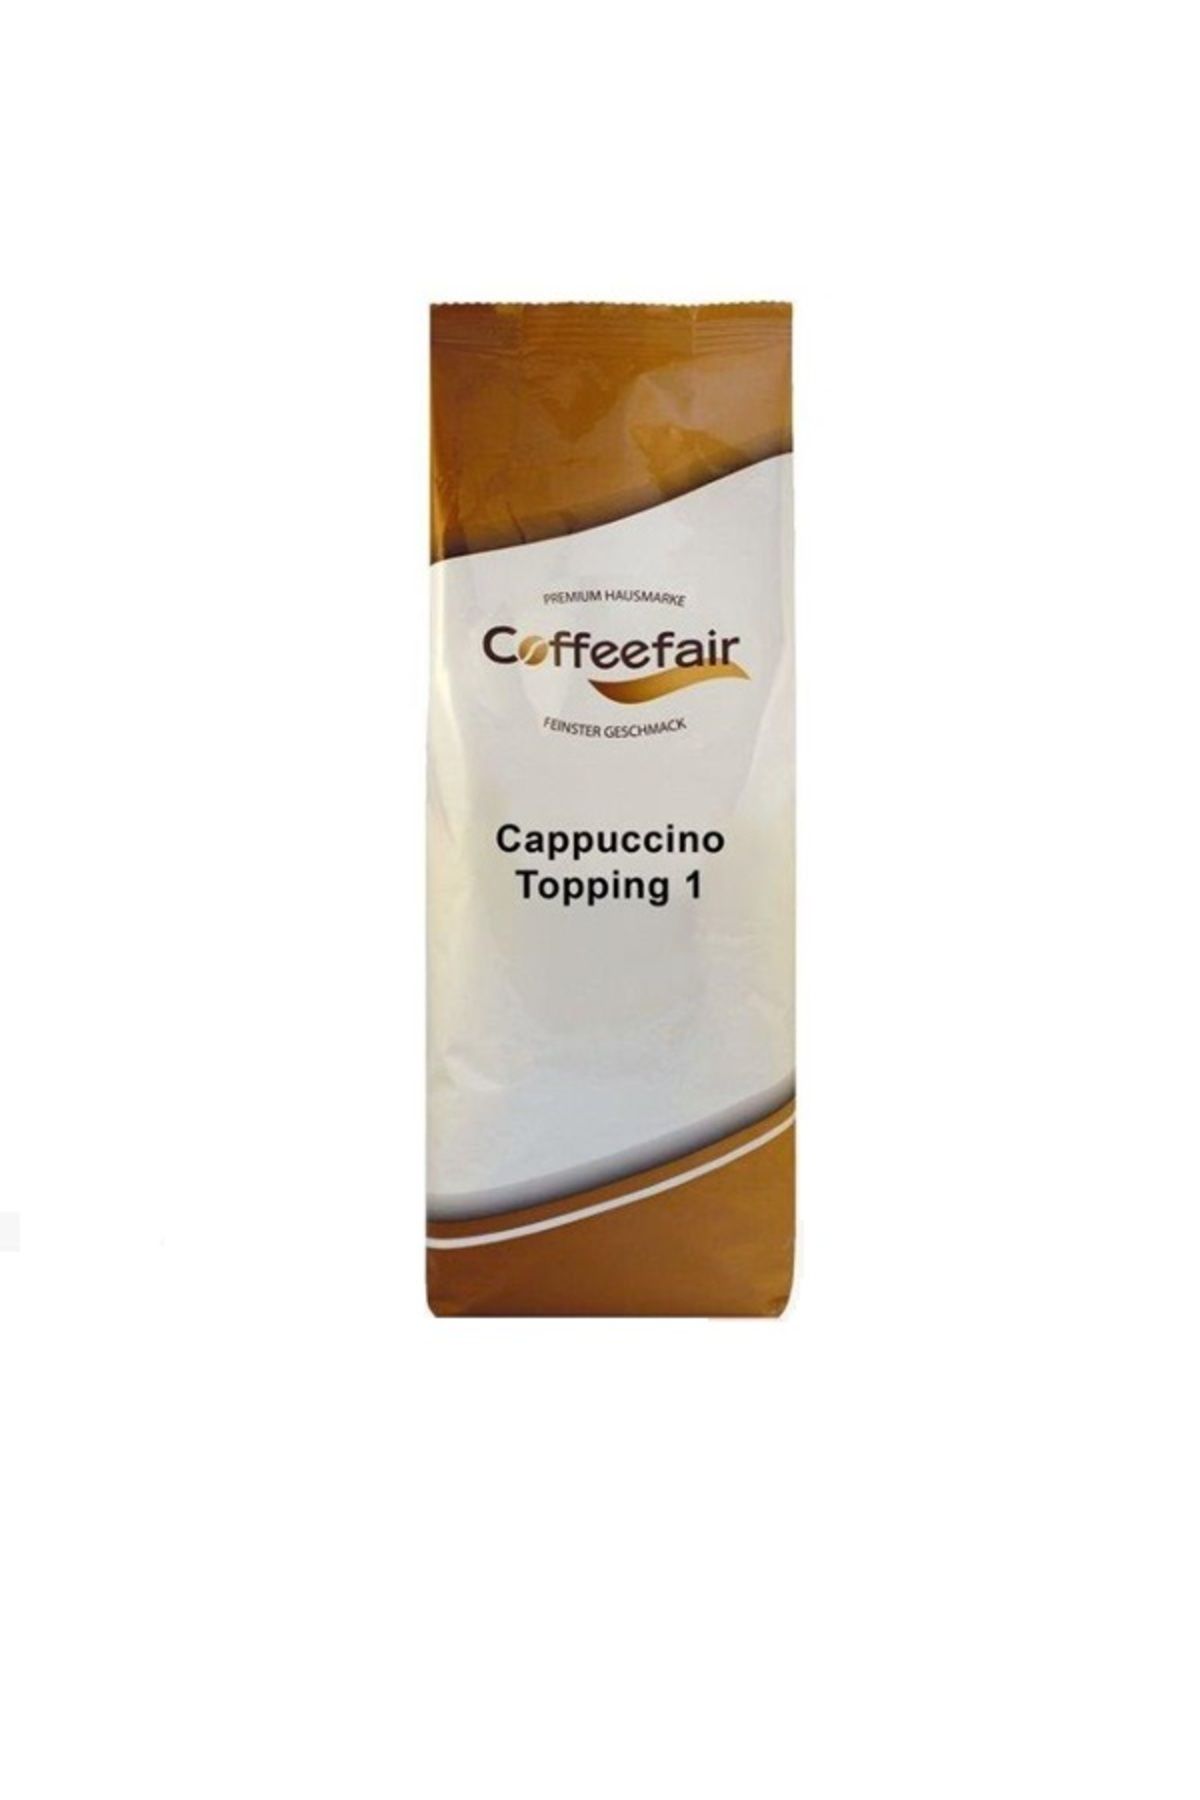 Coffeefair Cappuccino Topping 1 süt tozu - 1 kg hazır süt %32 yağsız süt içeriği